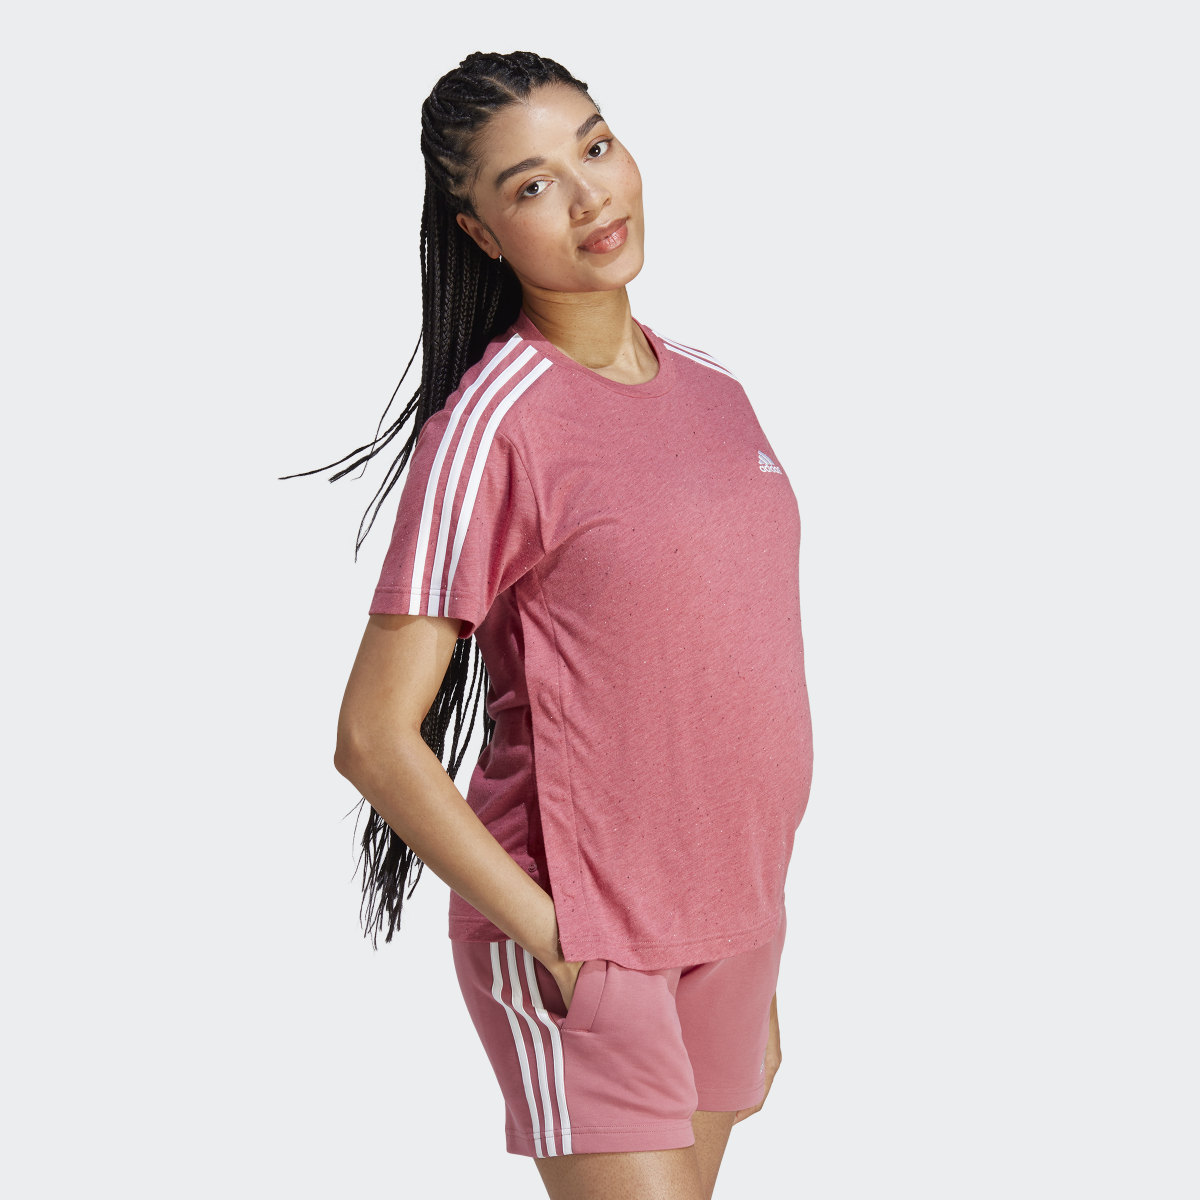 Adidas T-shirt de maternité (Maternité). 4